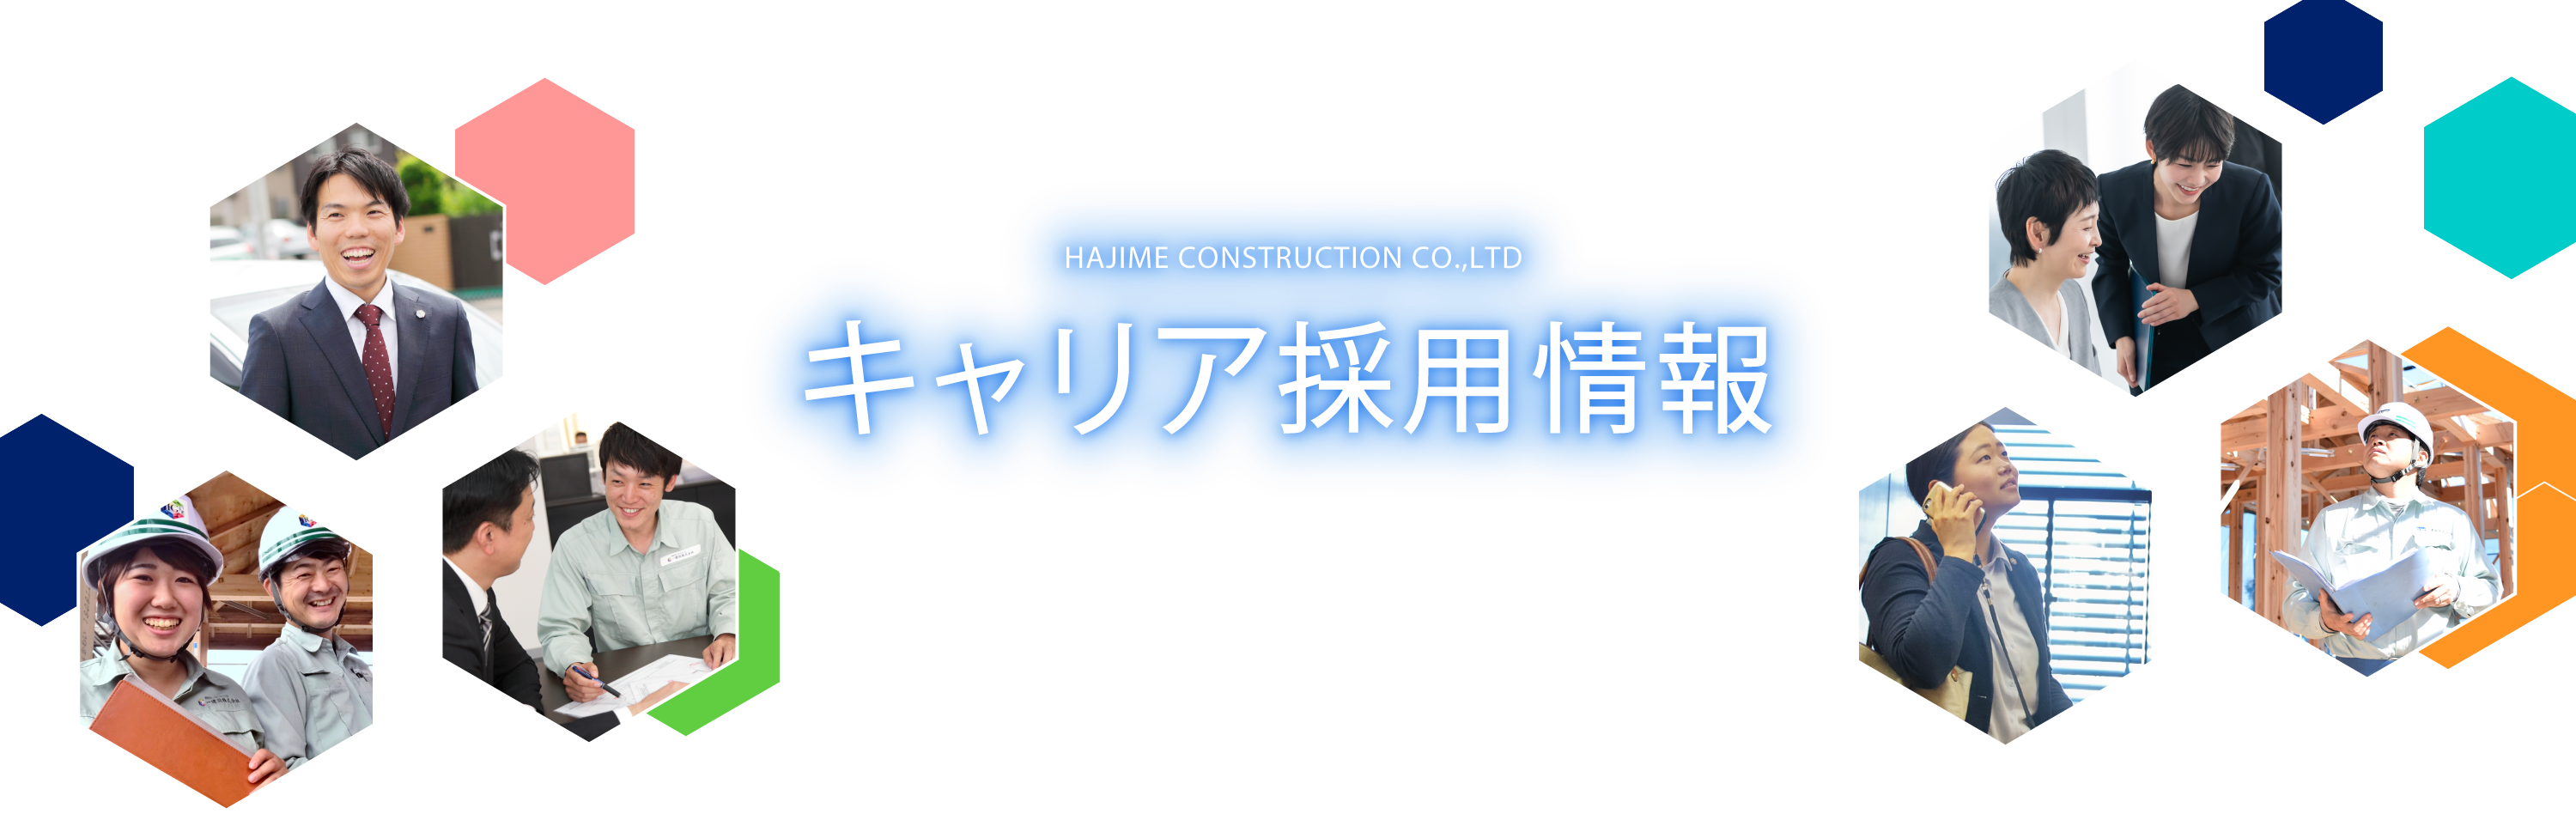 幸せな人生と、より良い社会を創るために。HAJIME CONSTRUCTION CO.,LTD